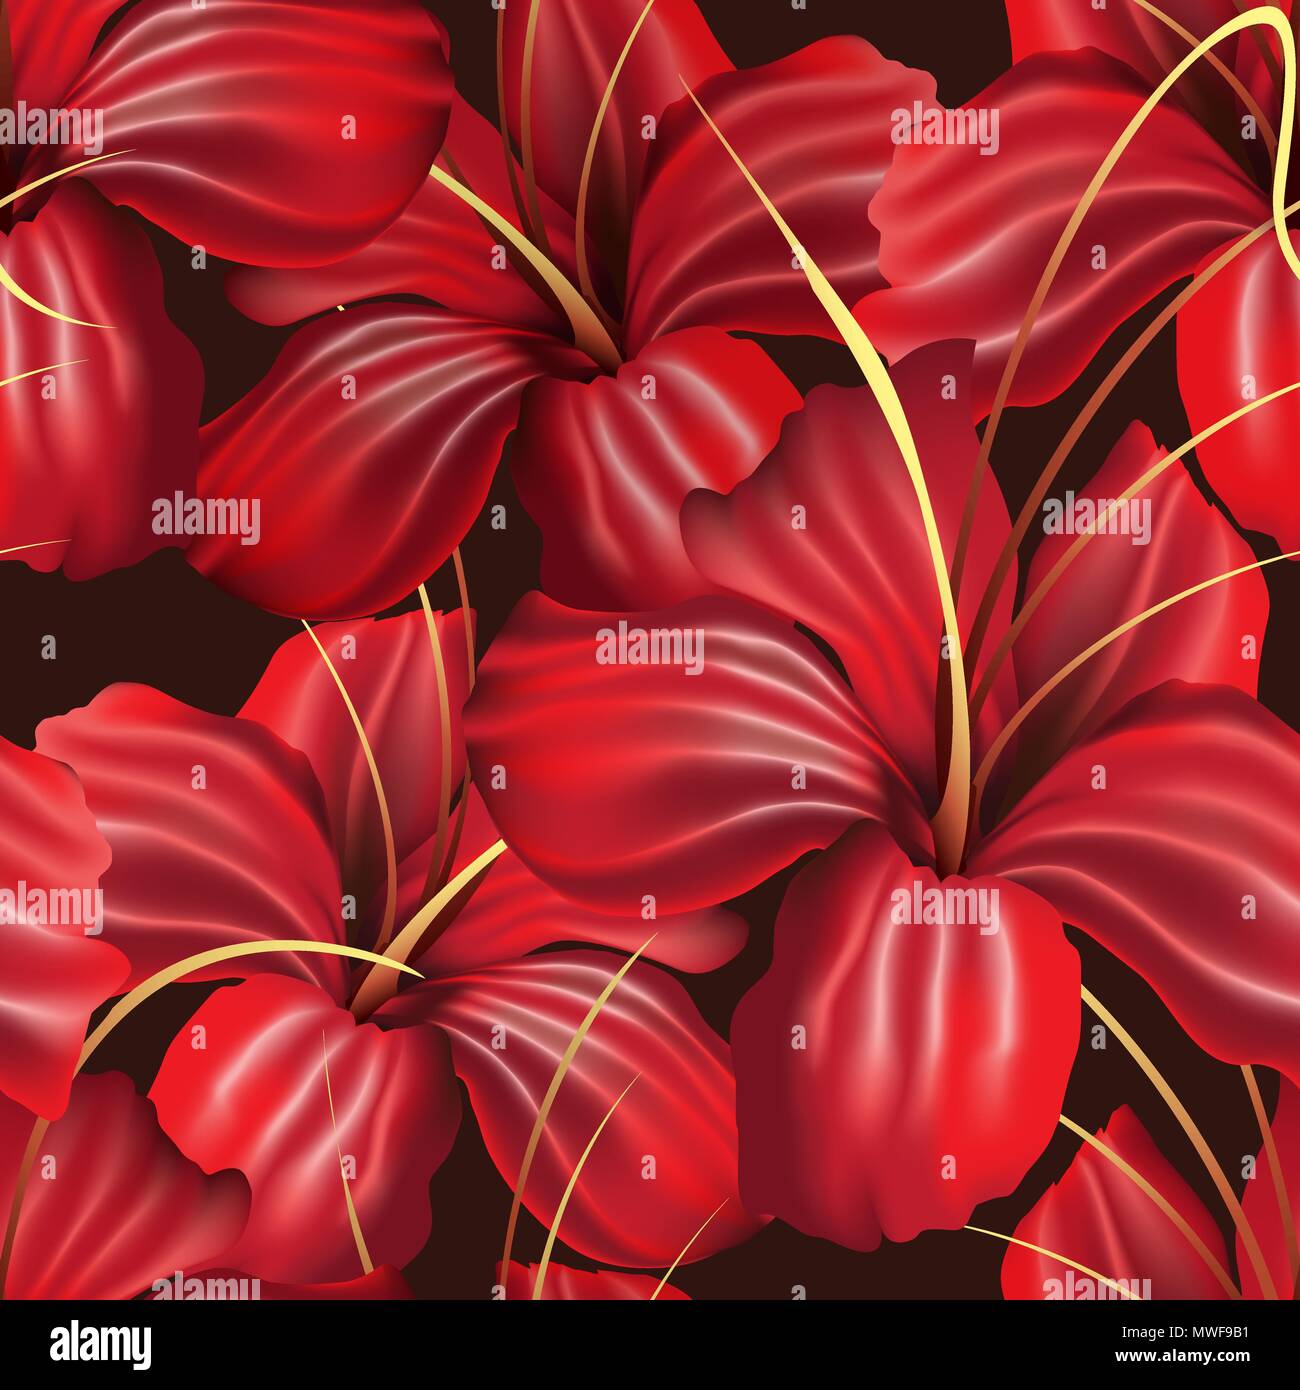 Fiori di orchidea rossi Seamless Pattern sul nero. Illustrazione Vettoriale. Illustrazione Vettoriale